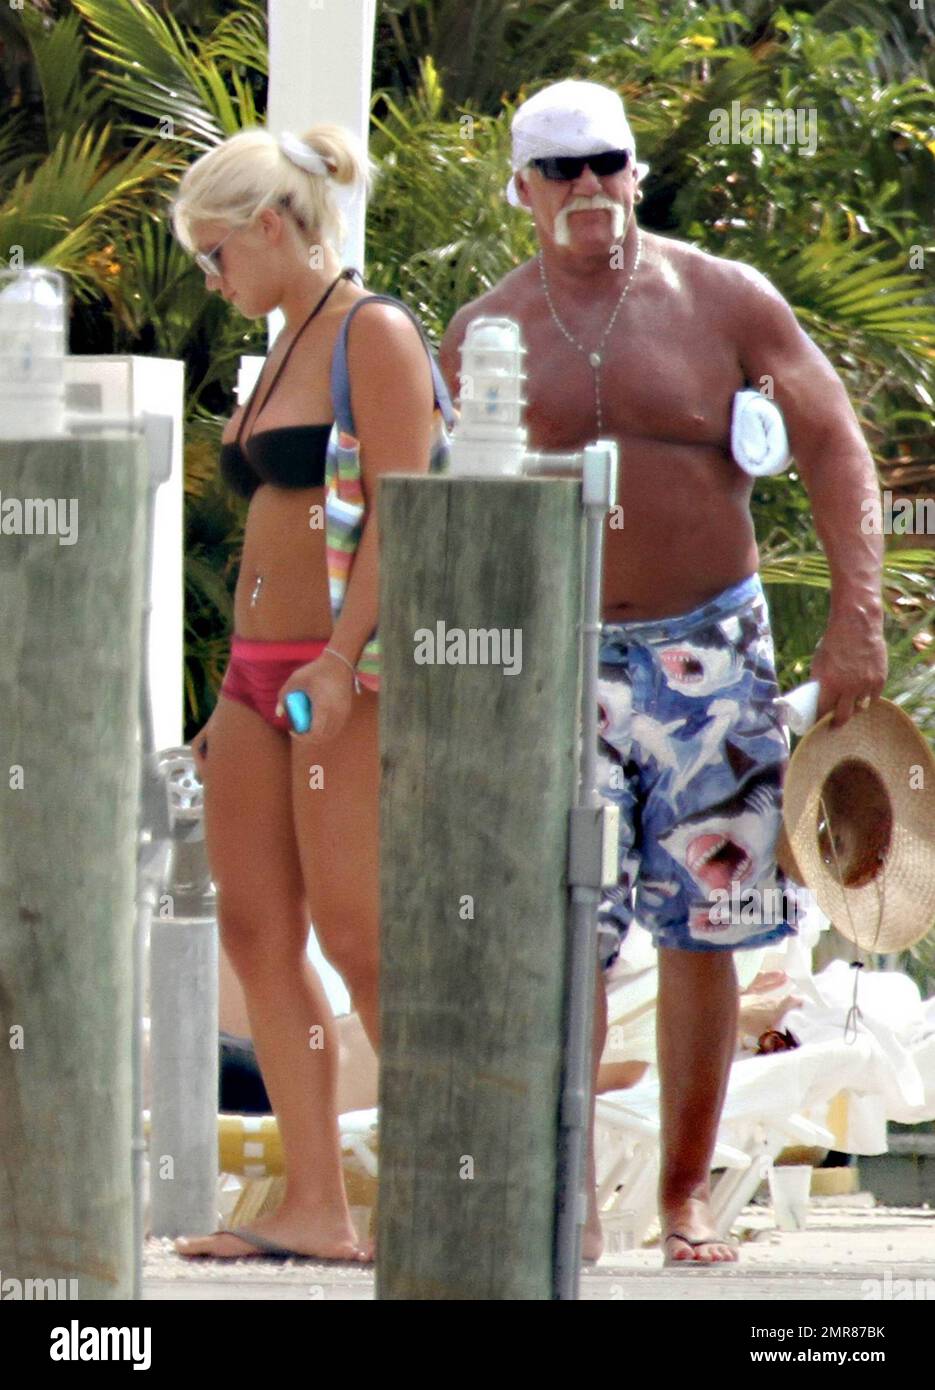 EXCLUSIVO! Hulk Hogan pasa el día junto a la piscina con su hija Brooke y su novia Jennifer McDaniel